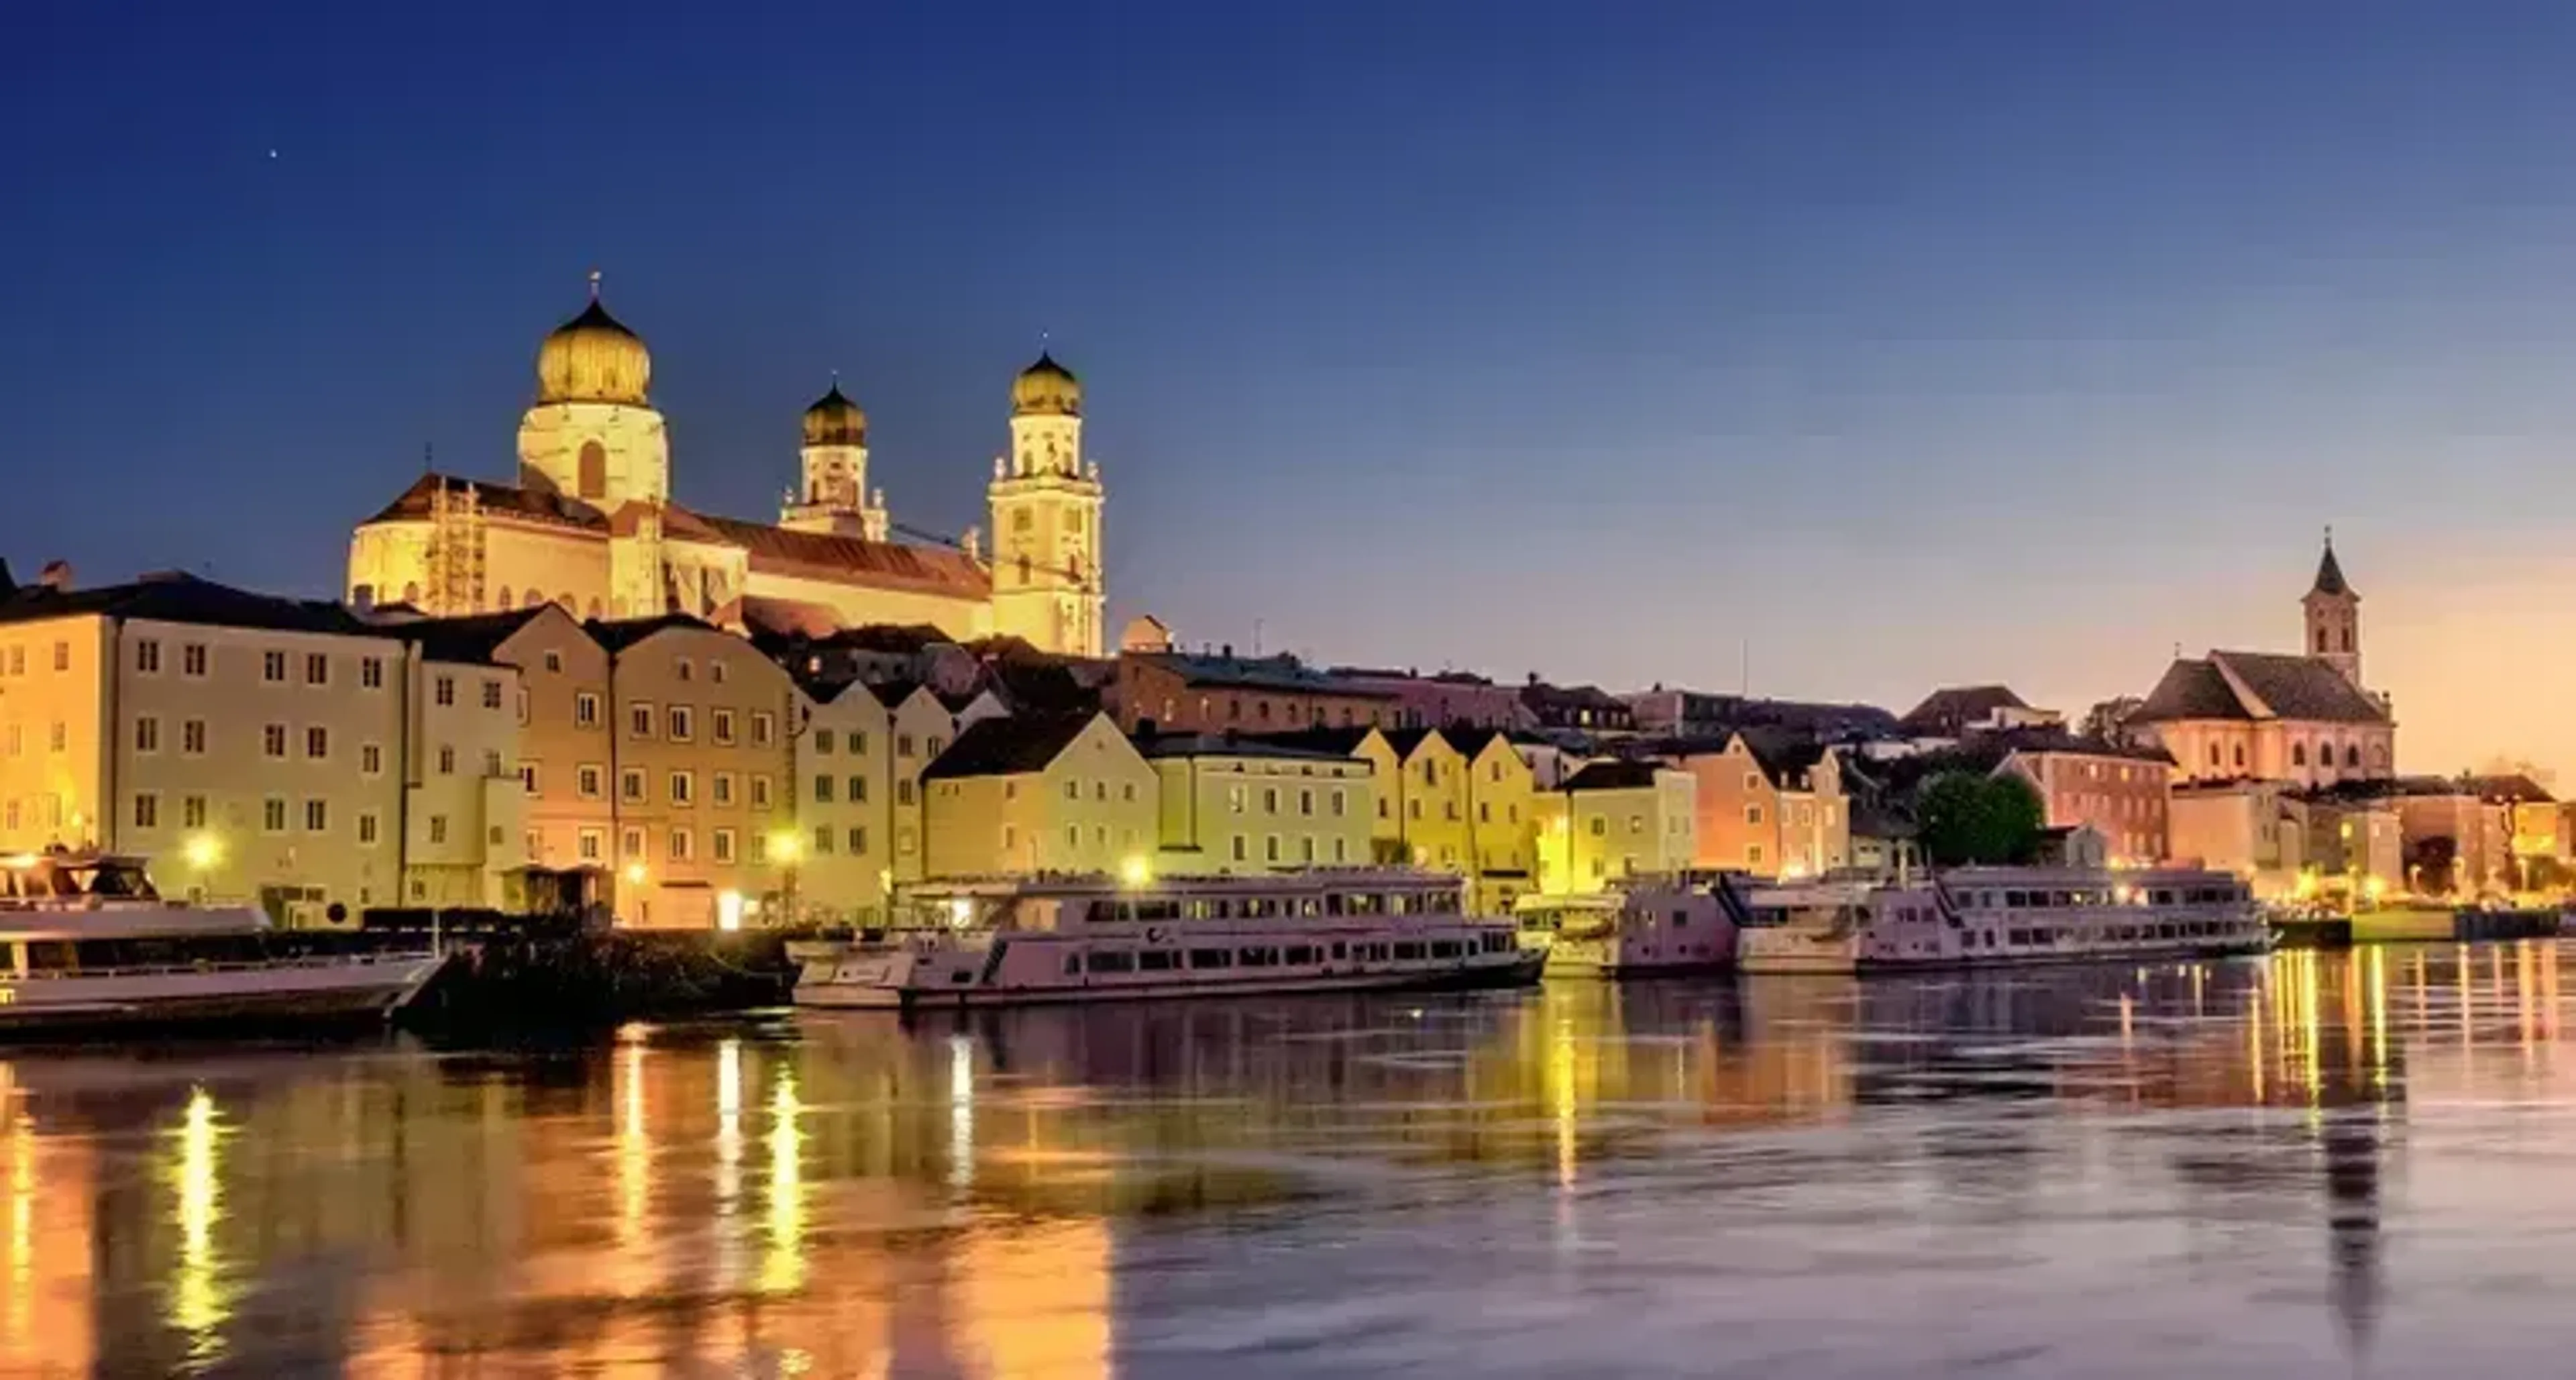 Passau-Neukirchen